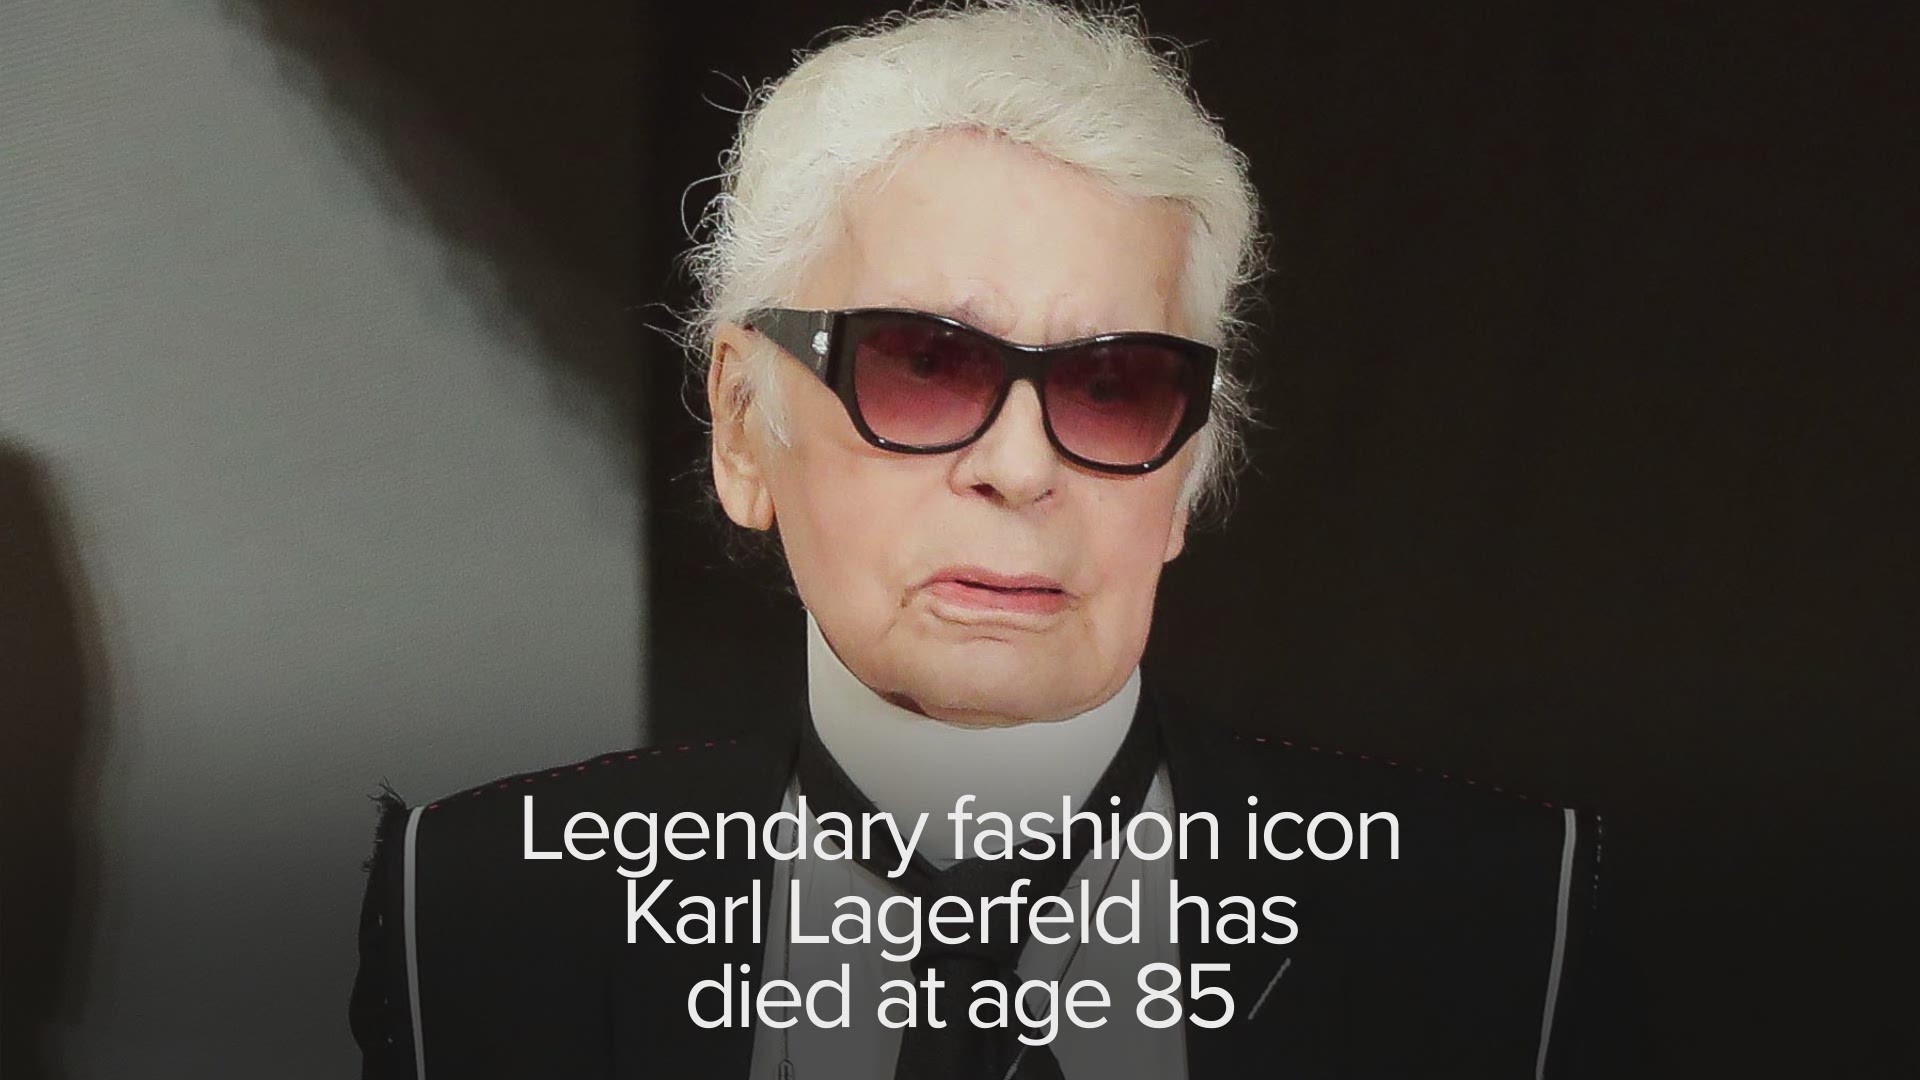 Karl Lagerfeld Dies at 85